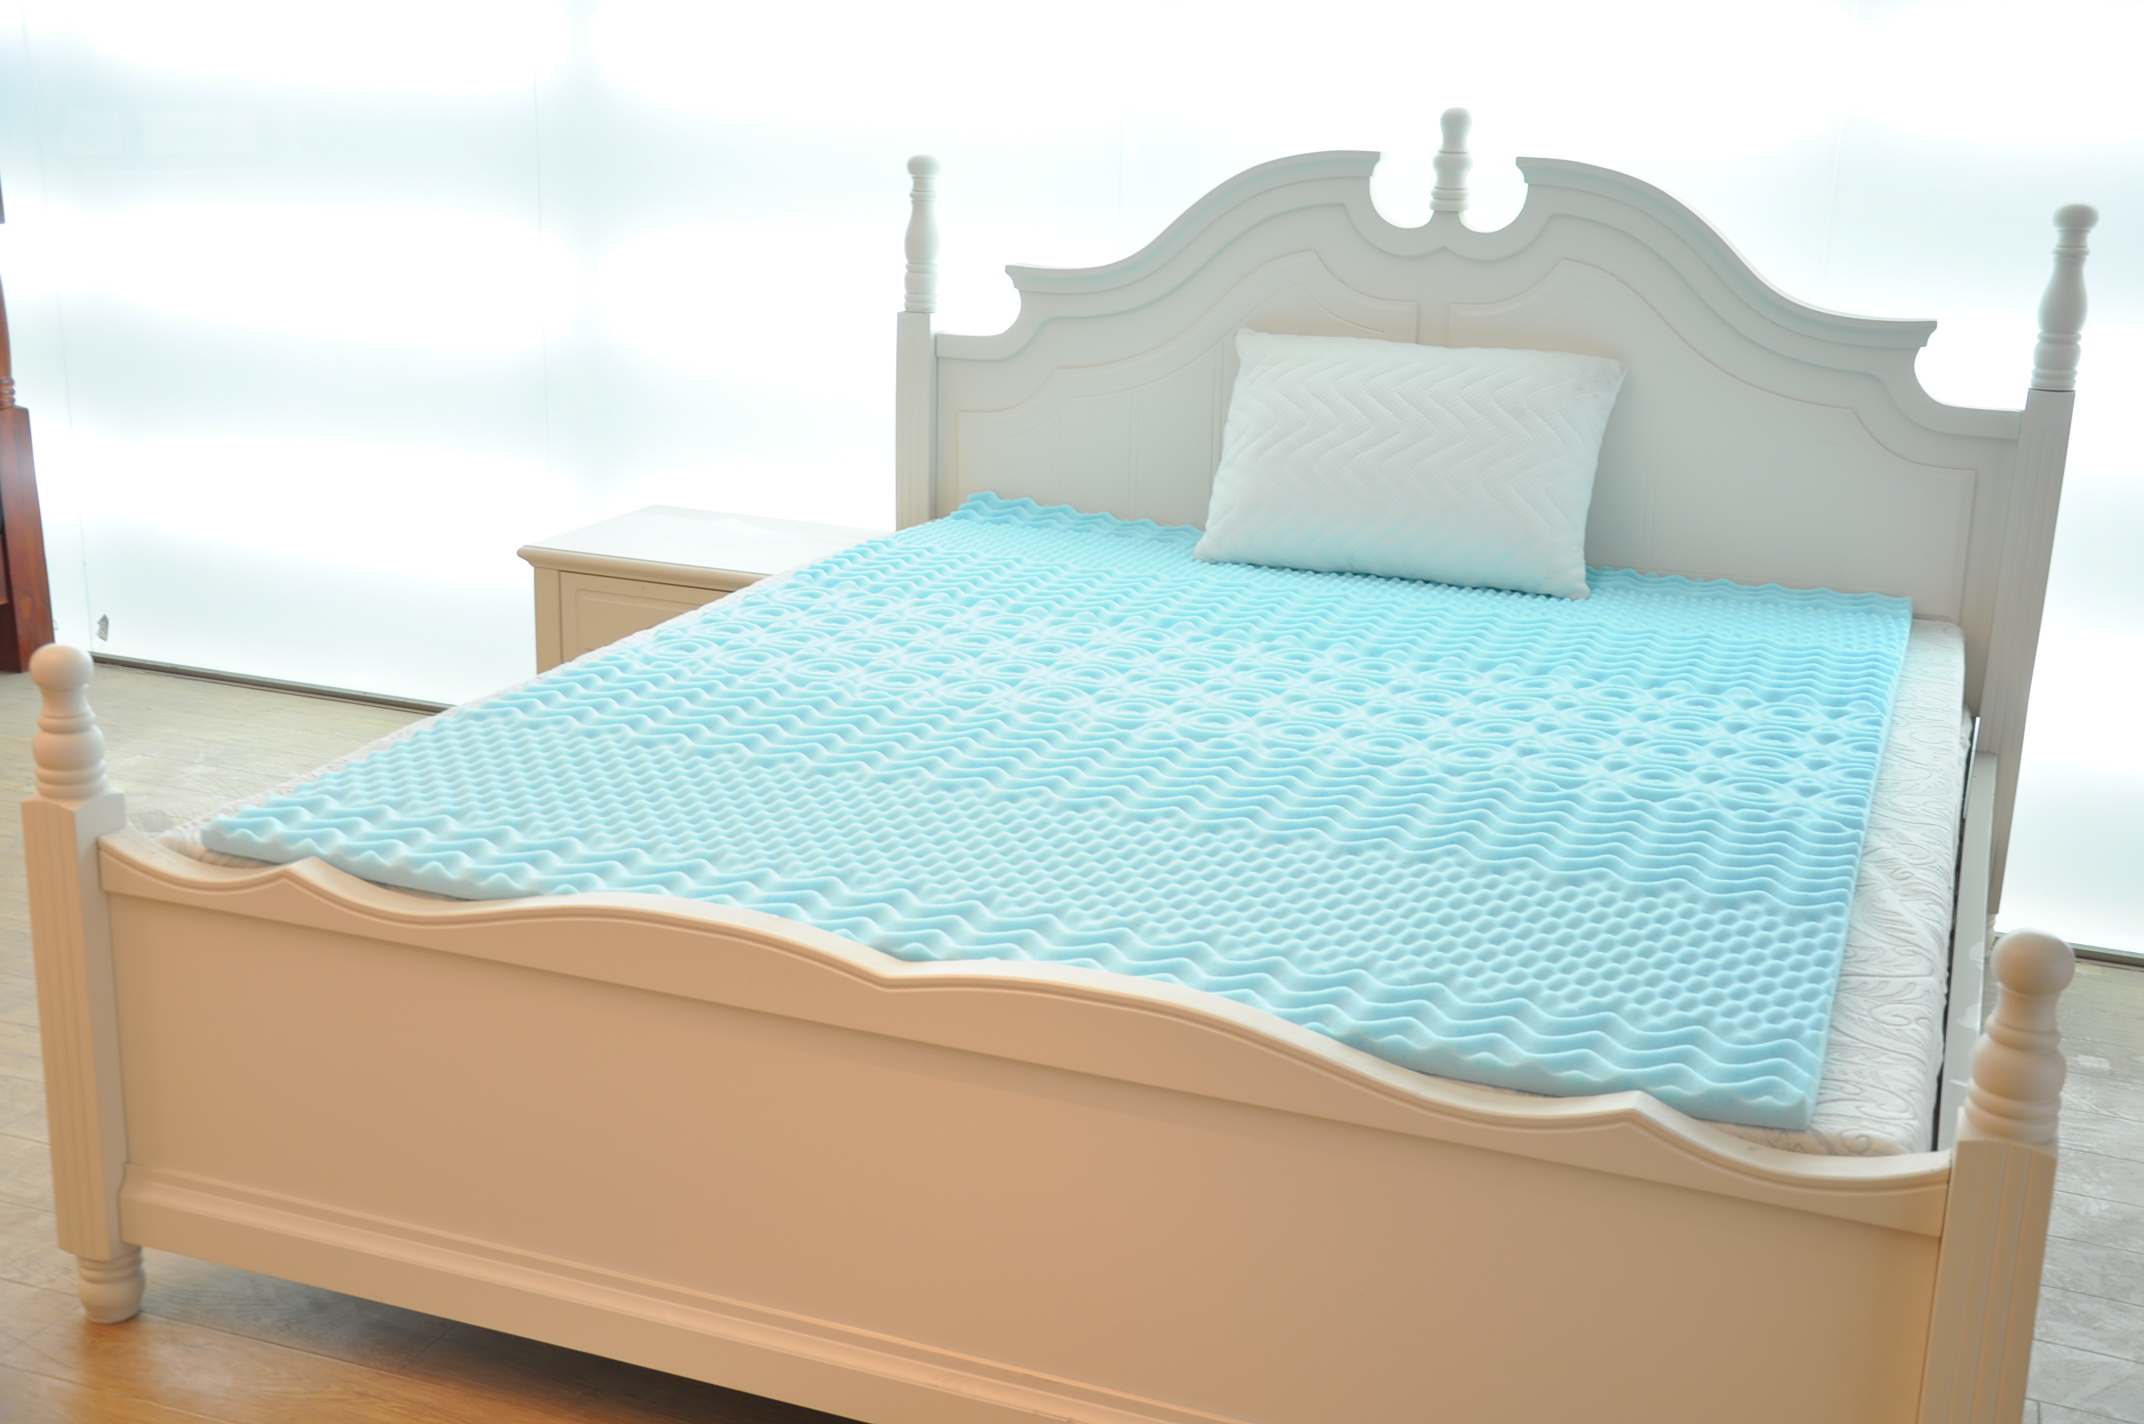 comfort mattress topper walmart